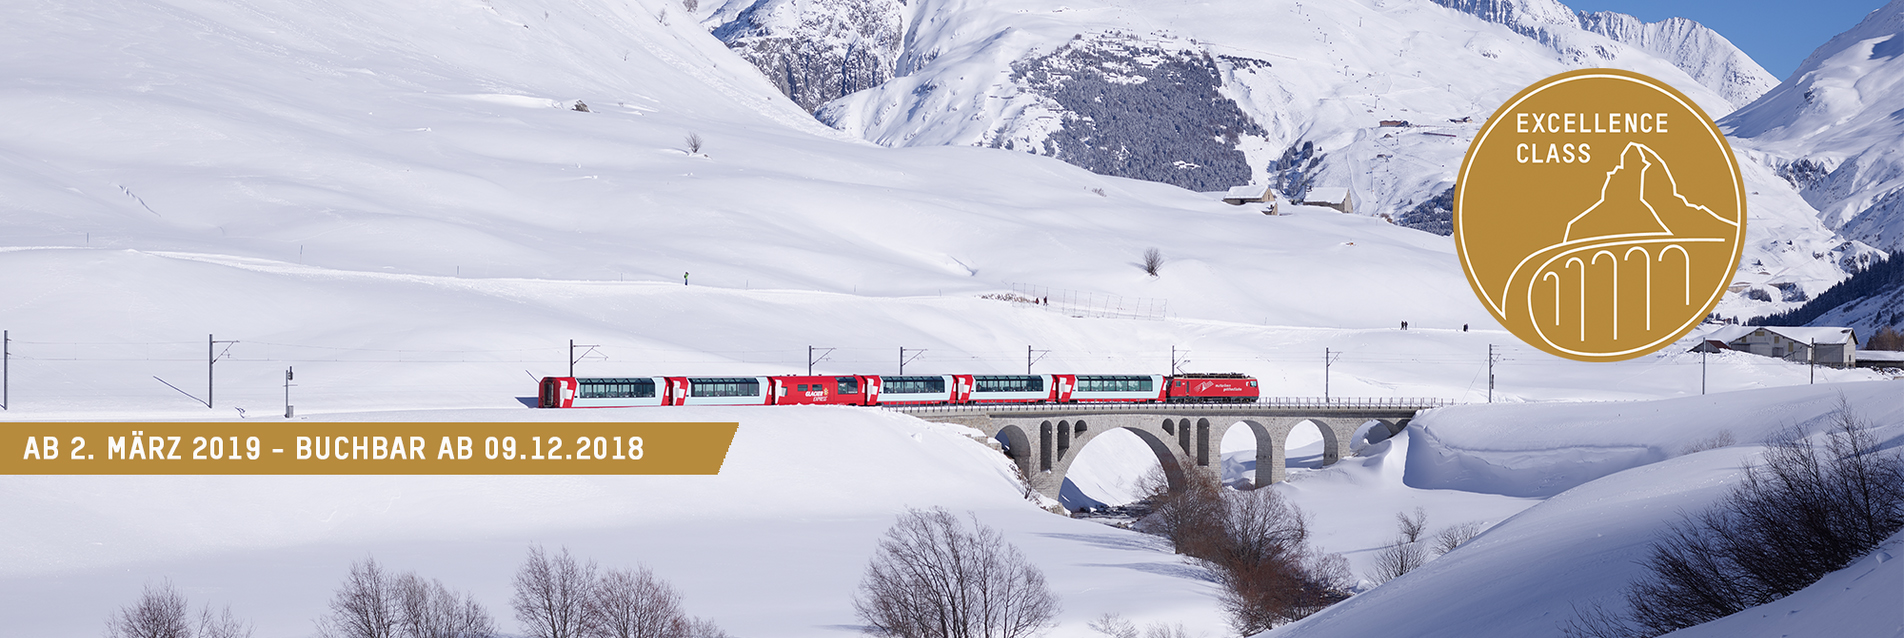 Excellence Class - die neue Klasse im Glacier Express ist ab 09. Dezember 2018 buchbar und die Reise beginnt ab 02. Mrz 2019. Einfach auf das Bild klicken und Informationen direkt beim Glacier Express einholen. 